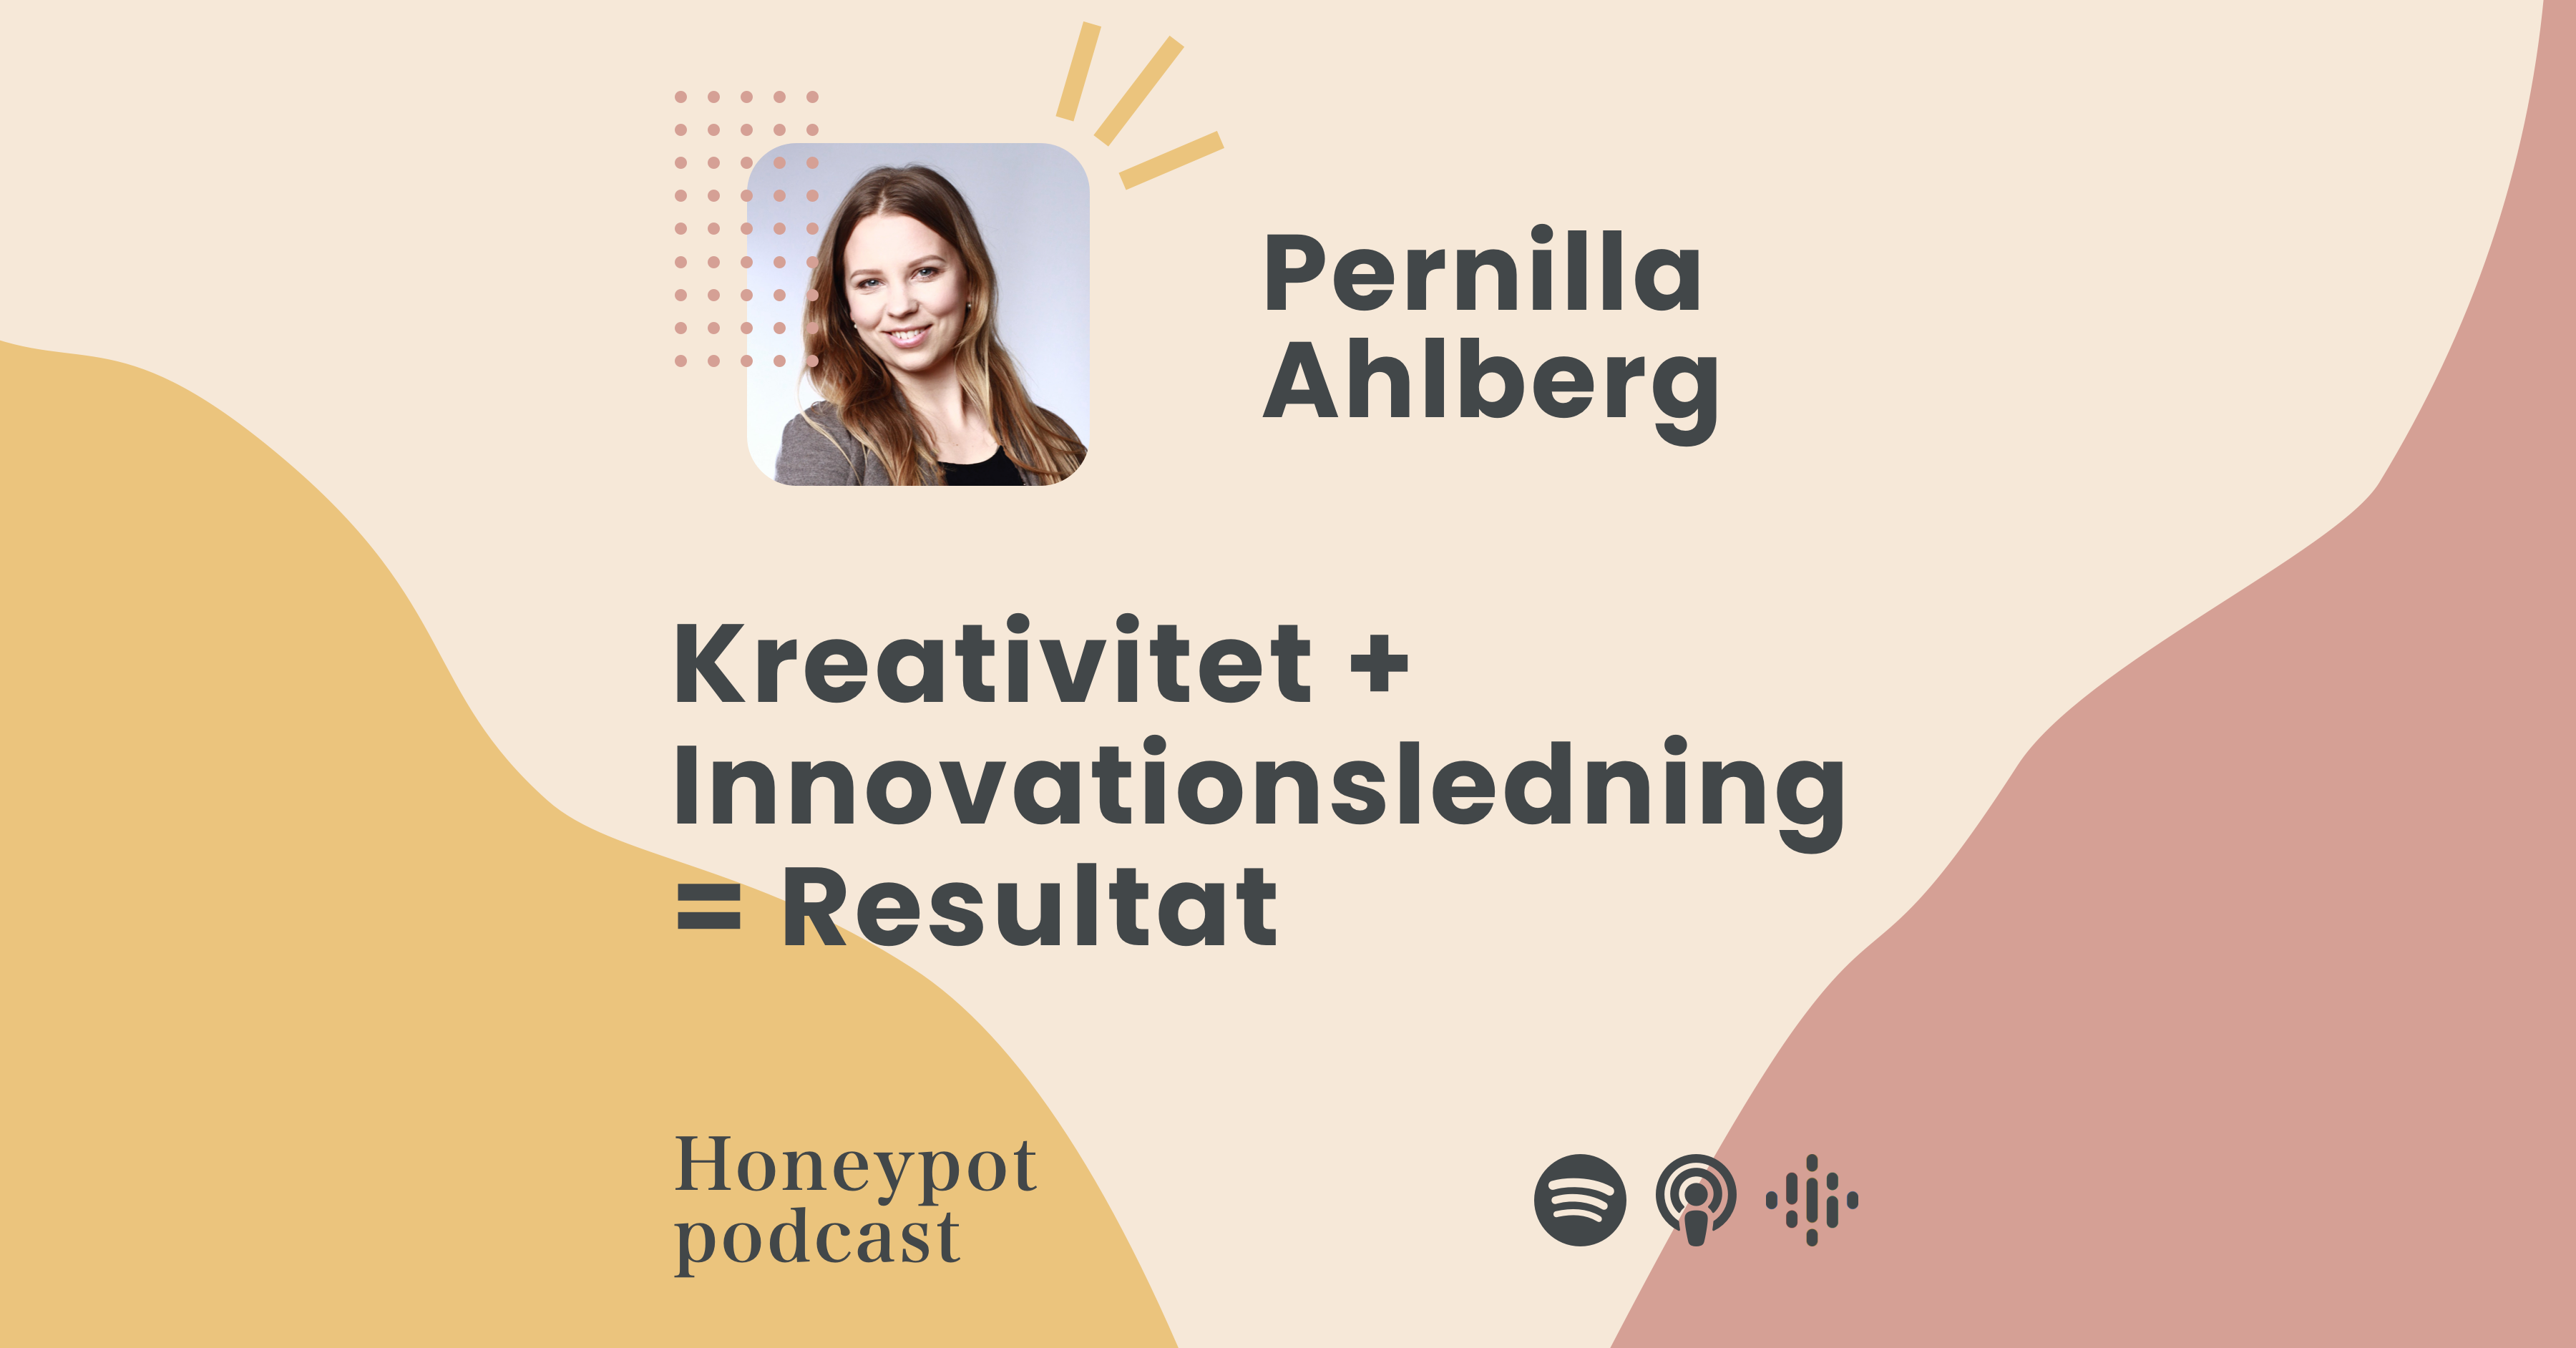 Pernilla Ahlberg - Kreativitet + Innovationsledning = Resultat (+ ett tips om hur du kan bredda er syn på innovation)